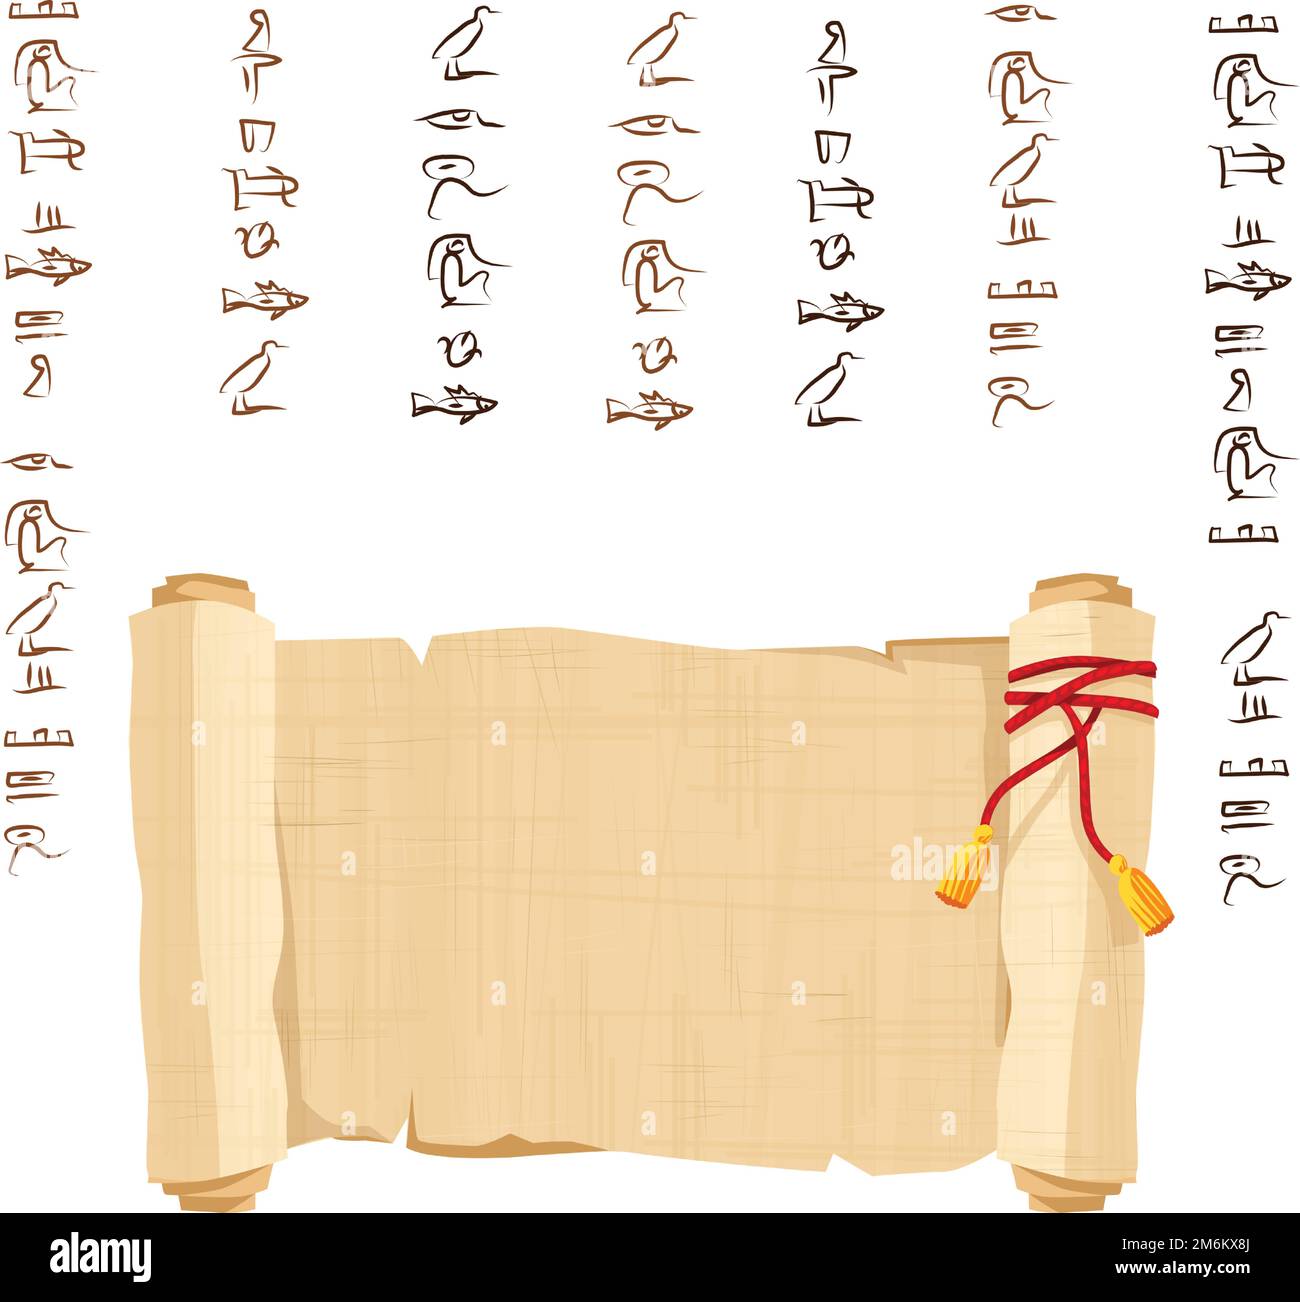 Alte ägyptische Papyrus-Schriftrolle dekoriert mit roter Kordel-Cartoon-Vektorgrafik. Ägyptisches Kultursymbol, entfaltetes, altes Papier zur Speicherung von Informationen, isoliert auf weißem Hintergrund Stock Vektor